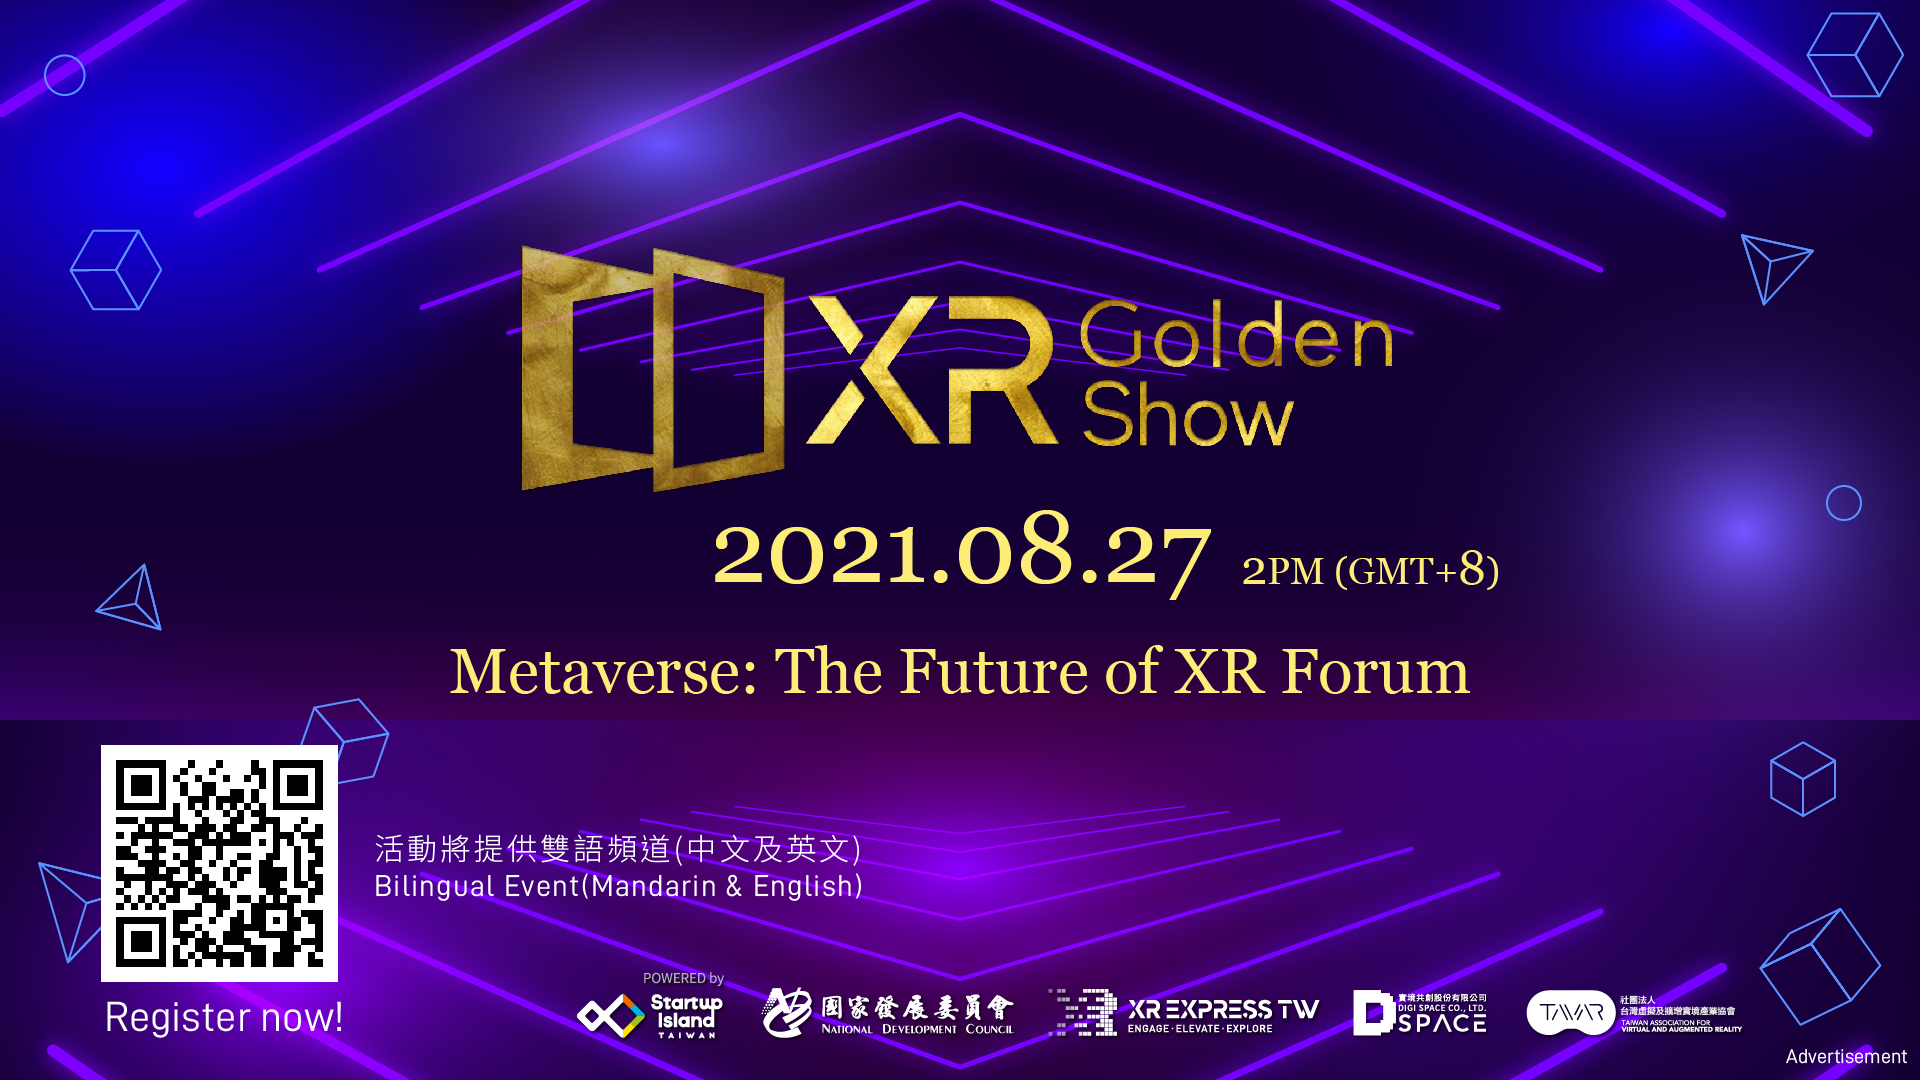 XR Golden Show